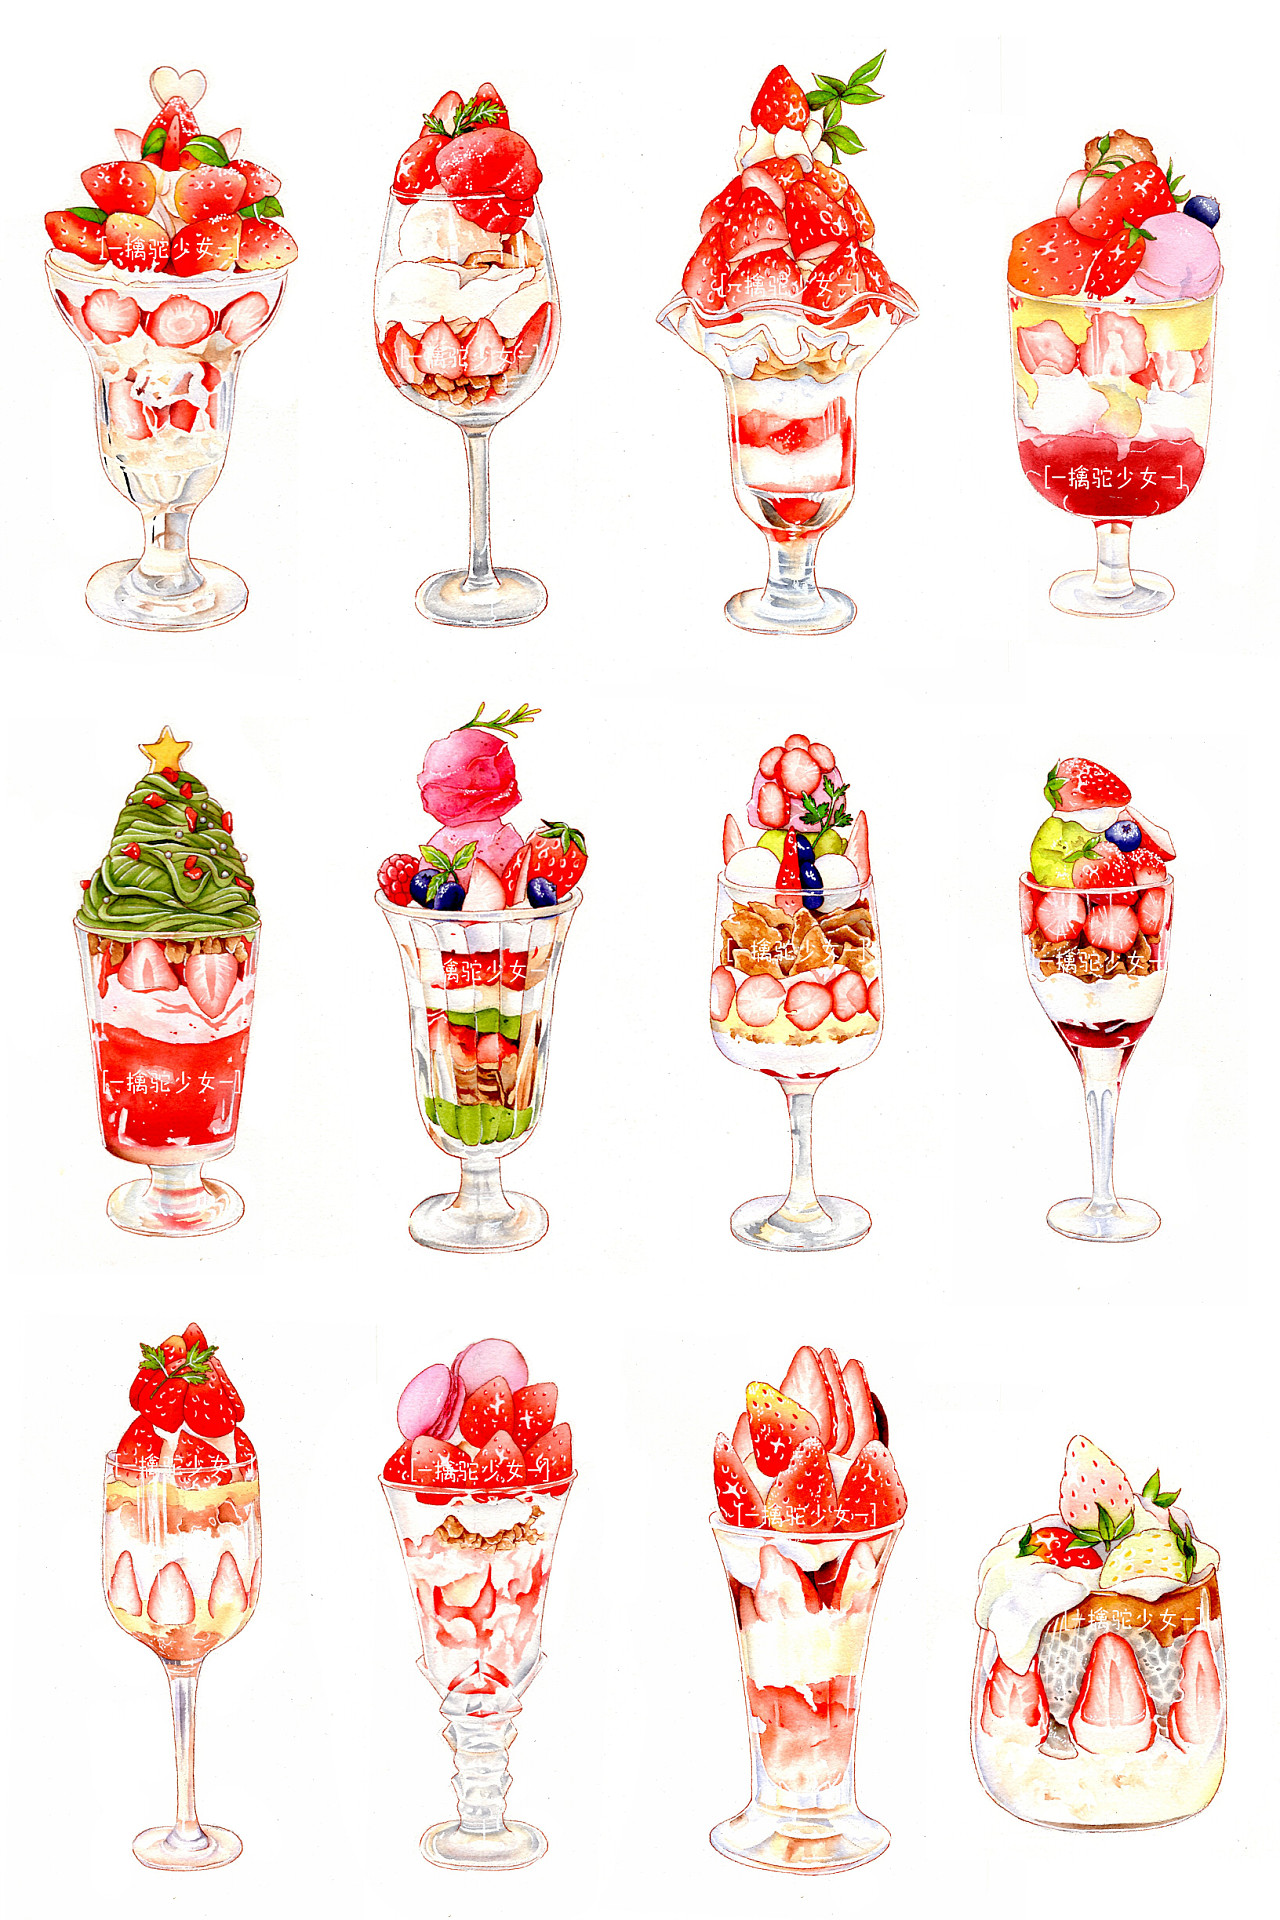 原创水彩手绘草莓饮品系列